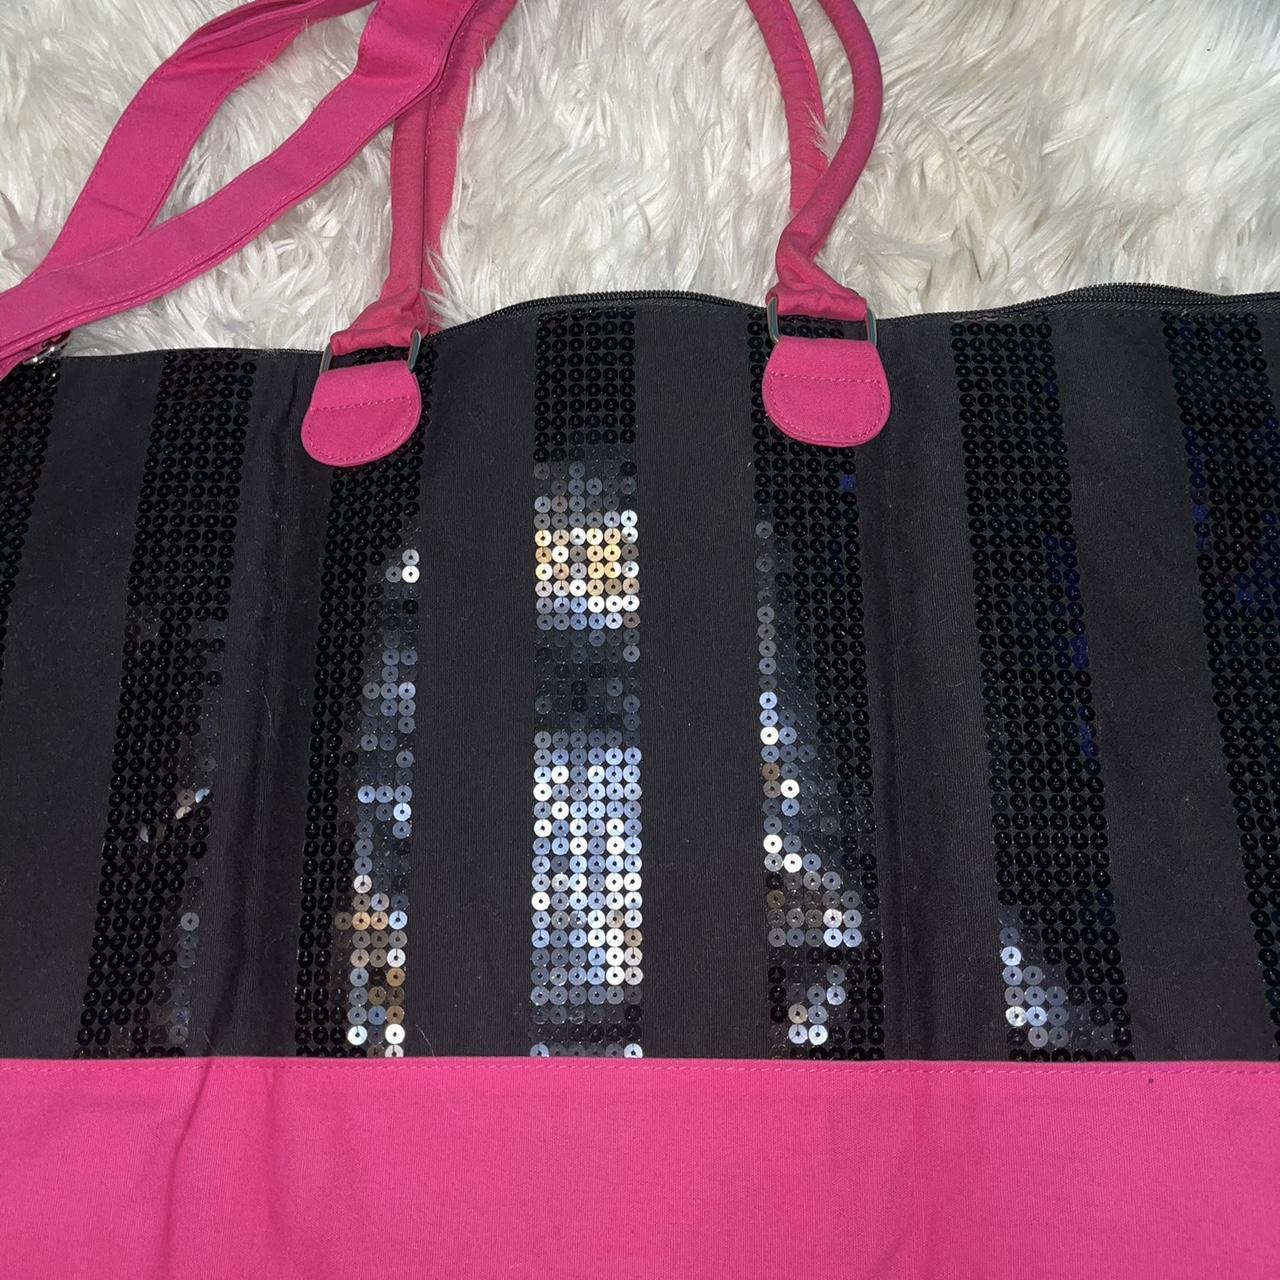 Victoria's Secret Vintage tote bag. Hot pink and - Depop